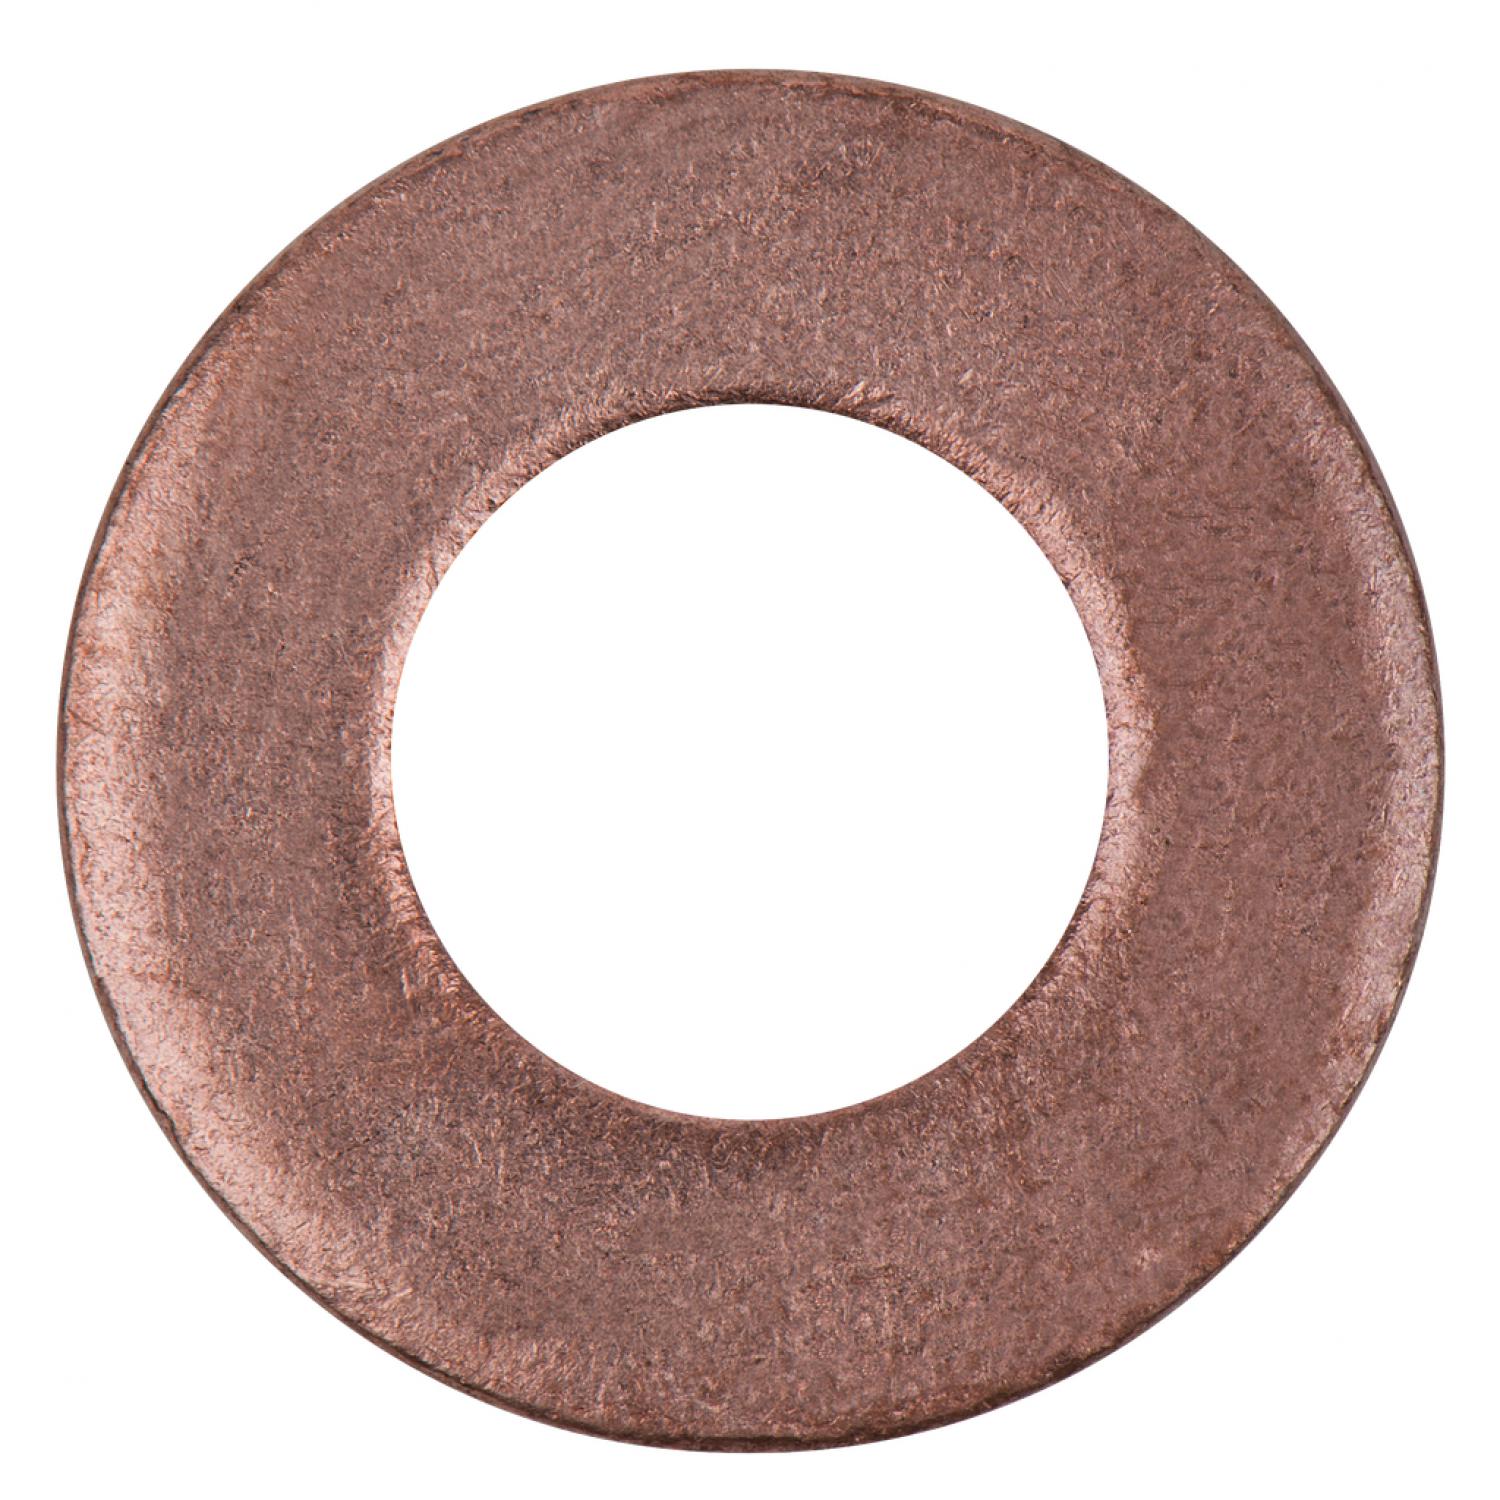 Уплотнительное кольцо, медное, внешний Ø 20 мм, внутренний Ø 10 мм, 25 шт в упаковке